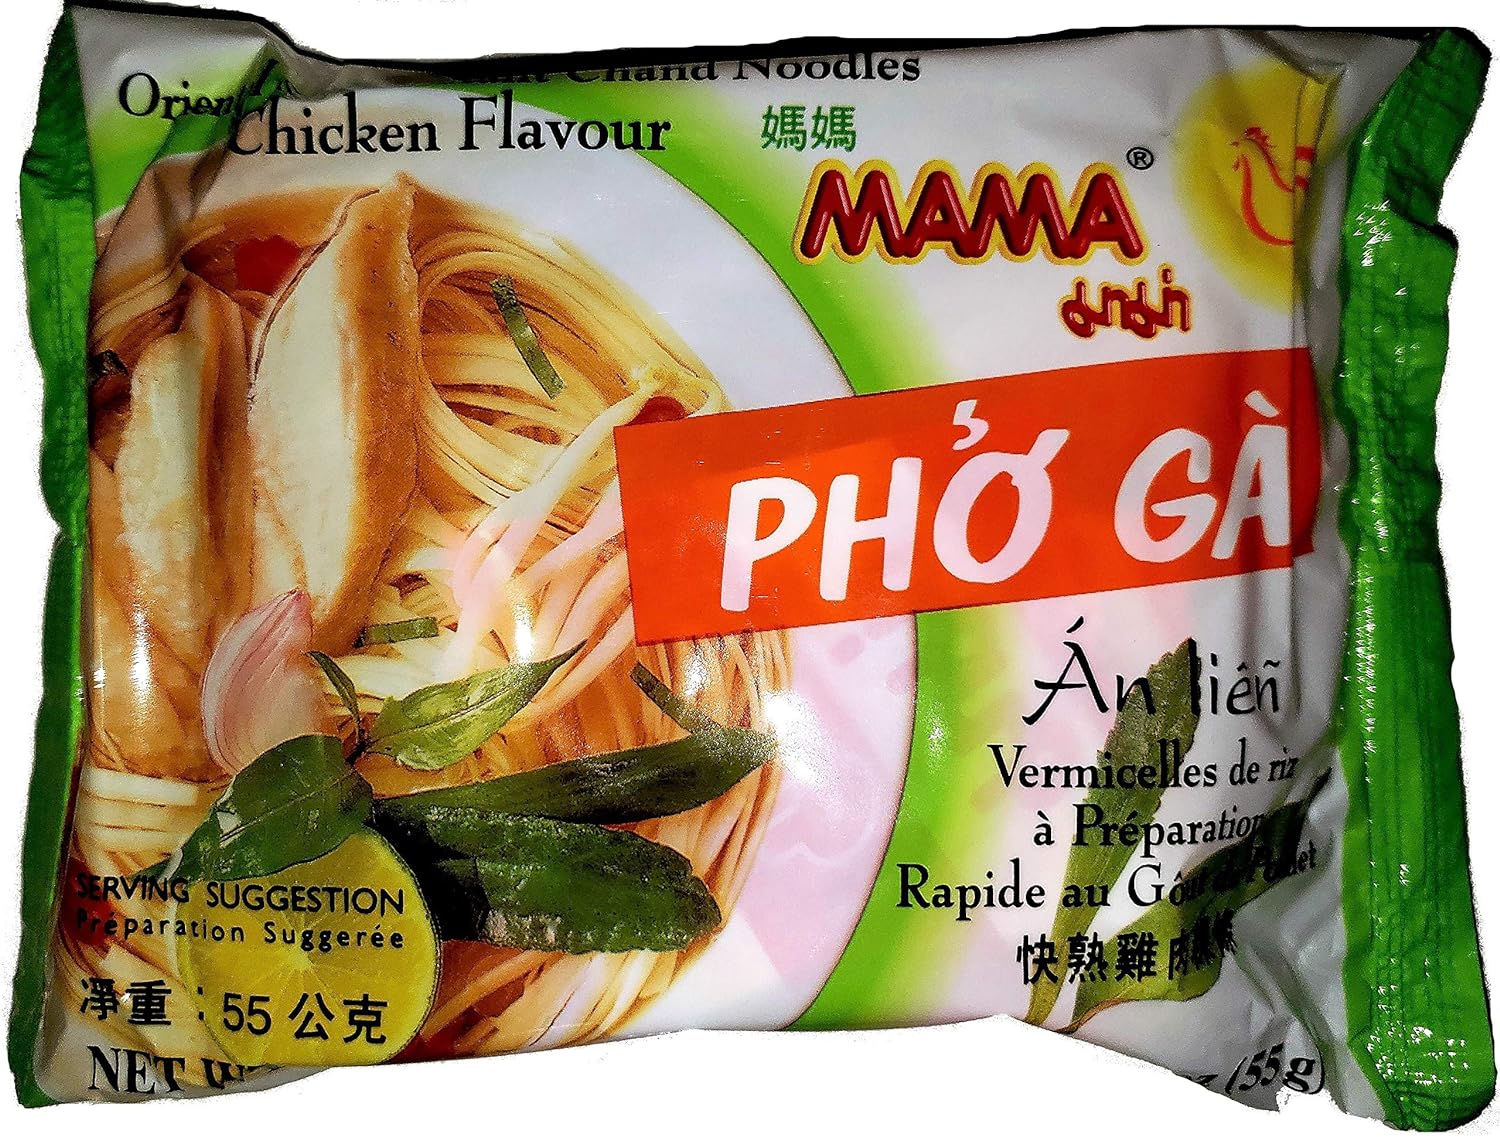 MAMA Instant Noodles Artificial Pork Flavor,30 Pkgs.x 2.12 Oz.(60g) – KT  Market